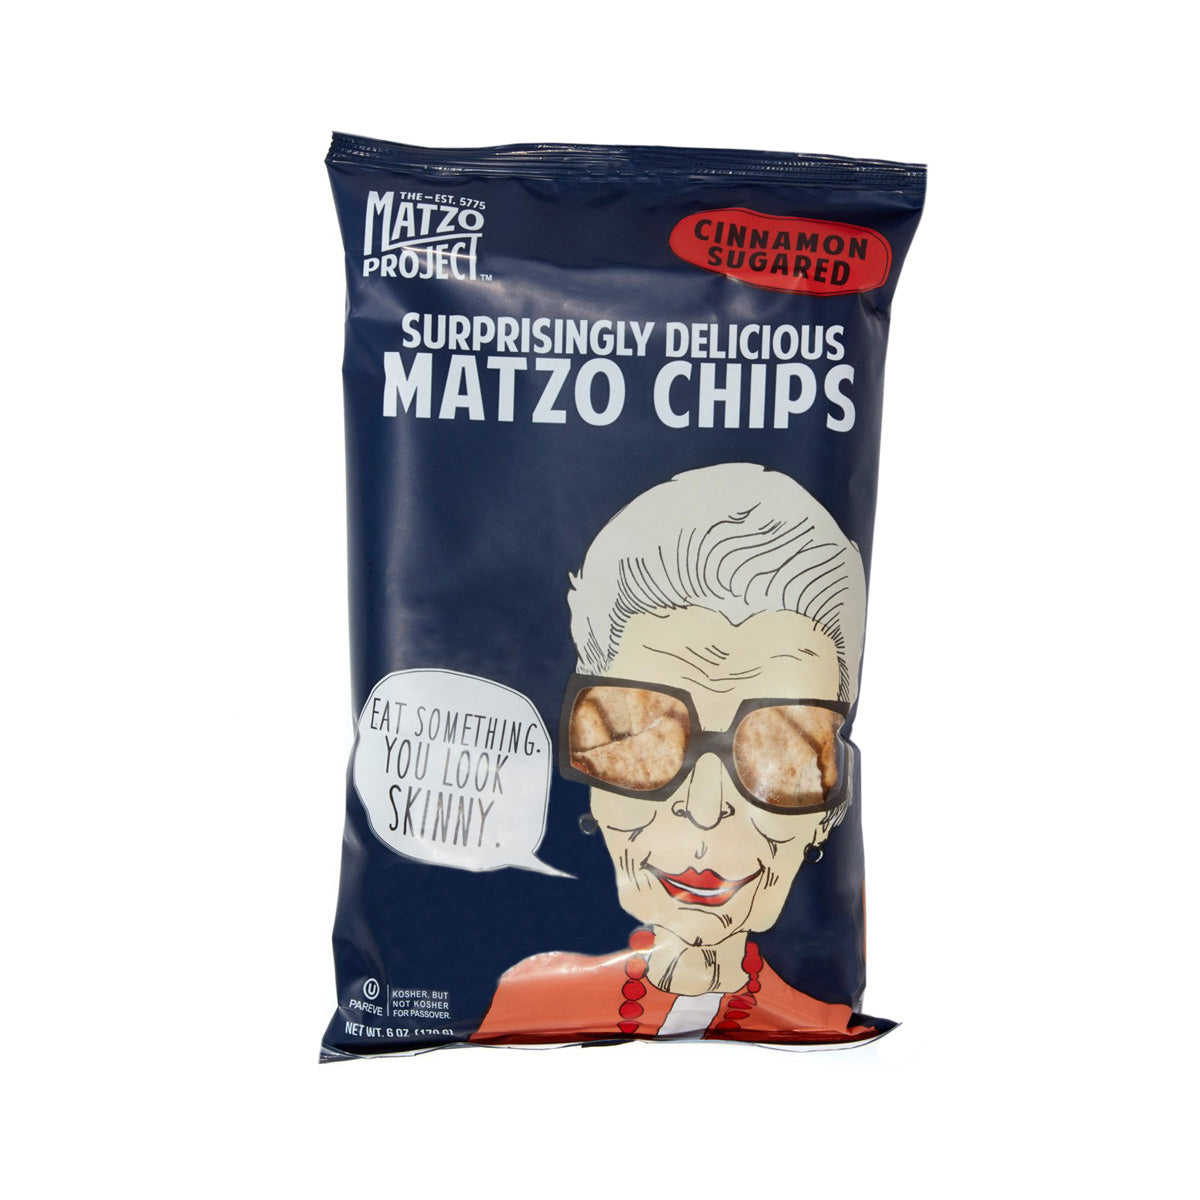 Matzo Project Matzo Chips with Cinnamon Sugar 6 OZ